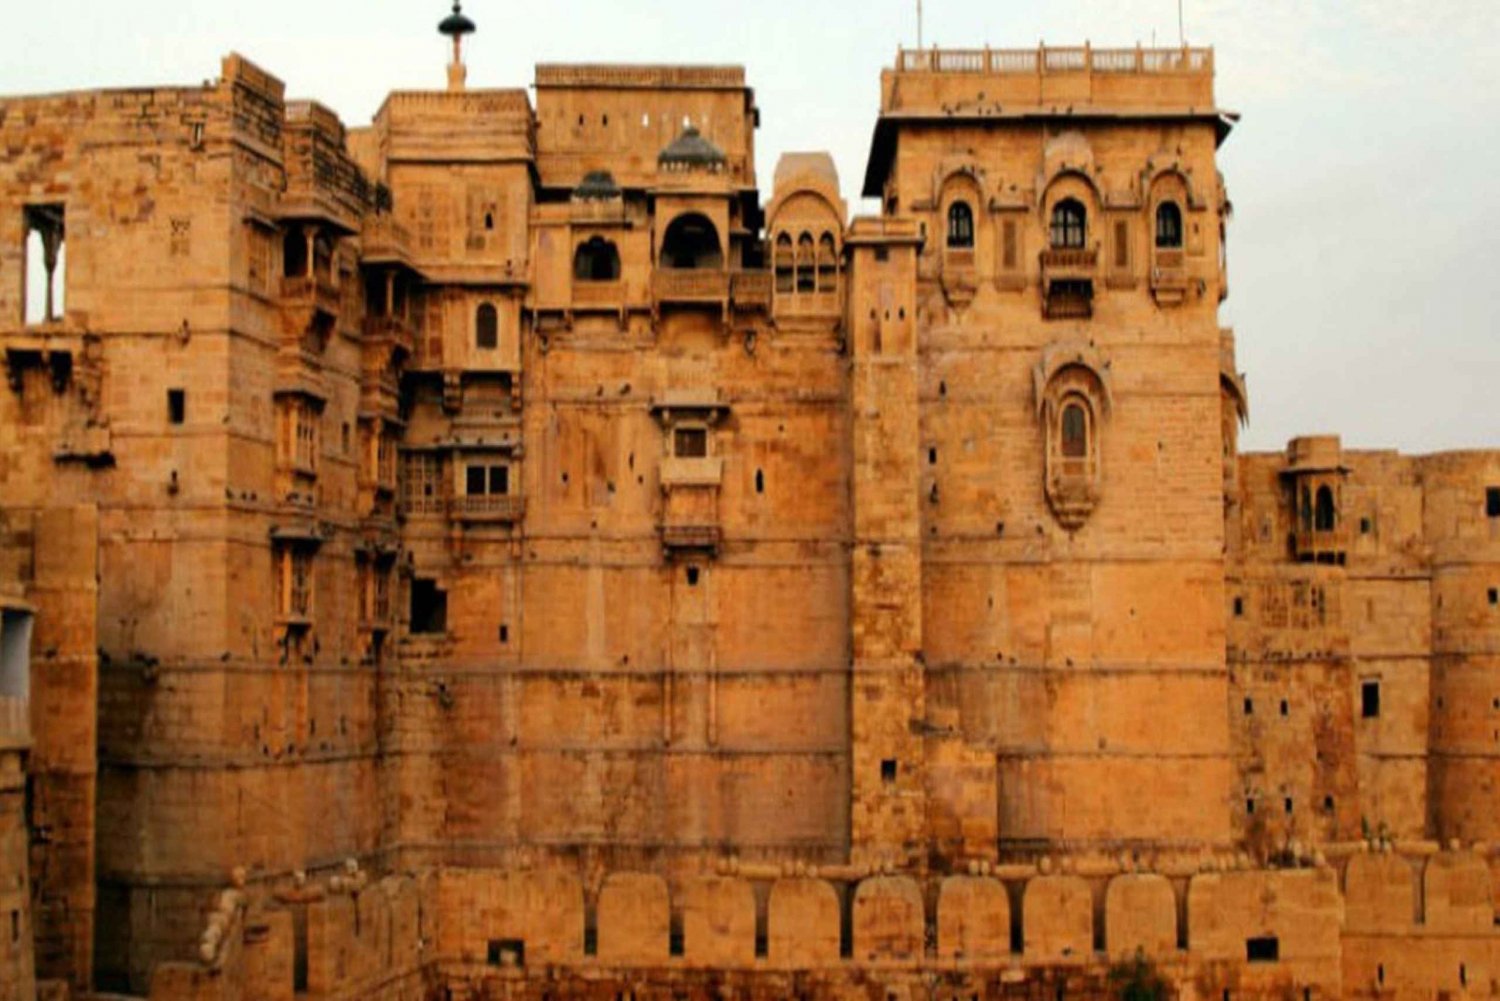 Excursão privada pela cidade de Jaisalmer com Fort e Heritage Havelis